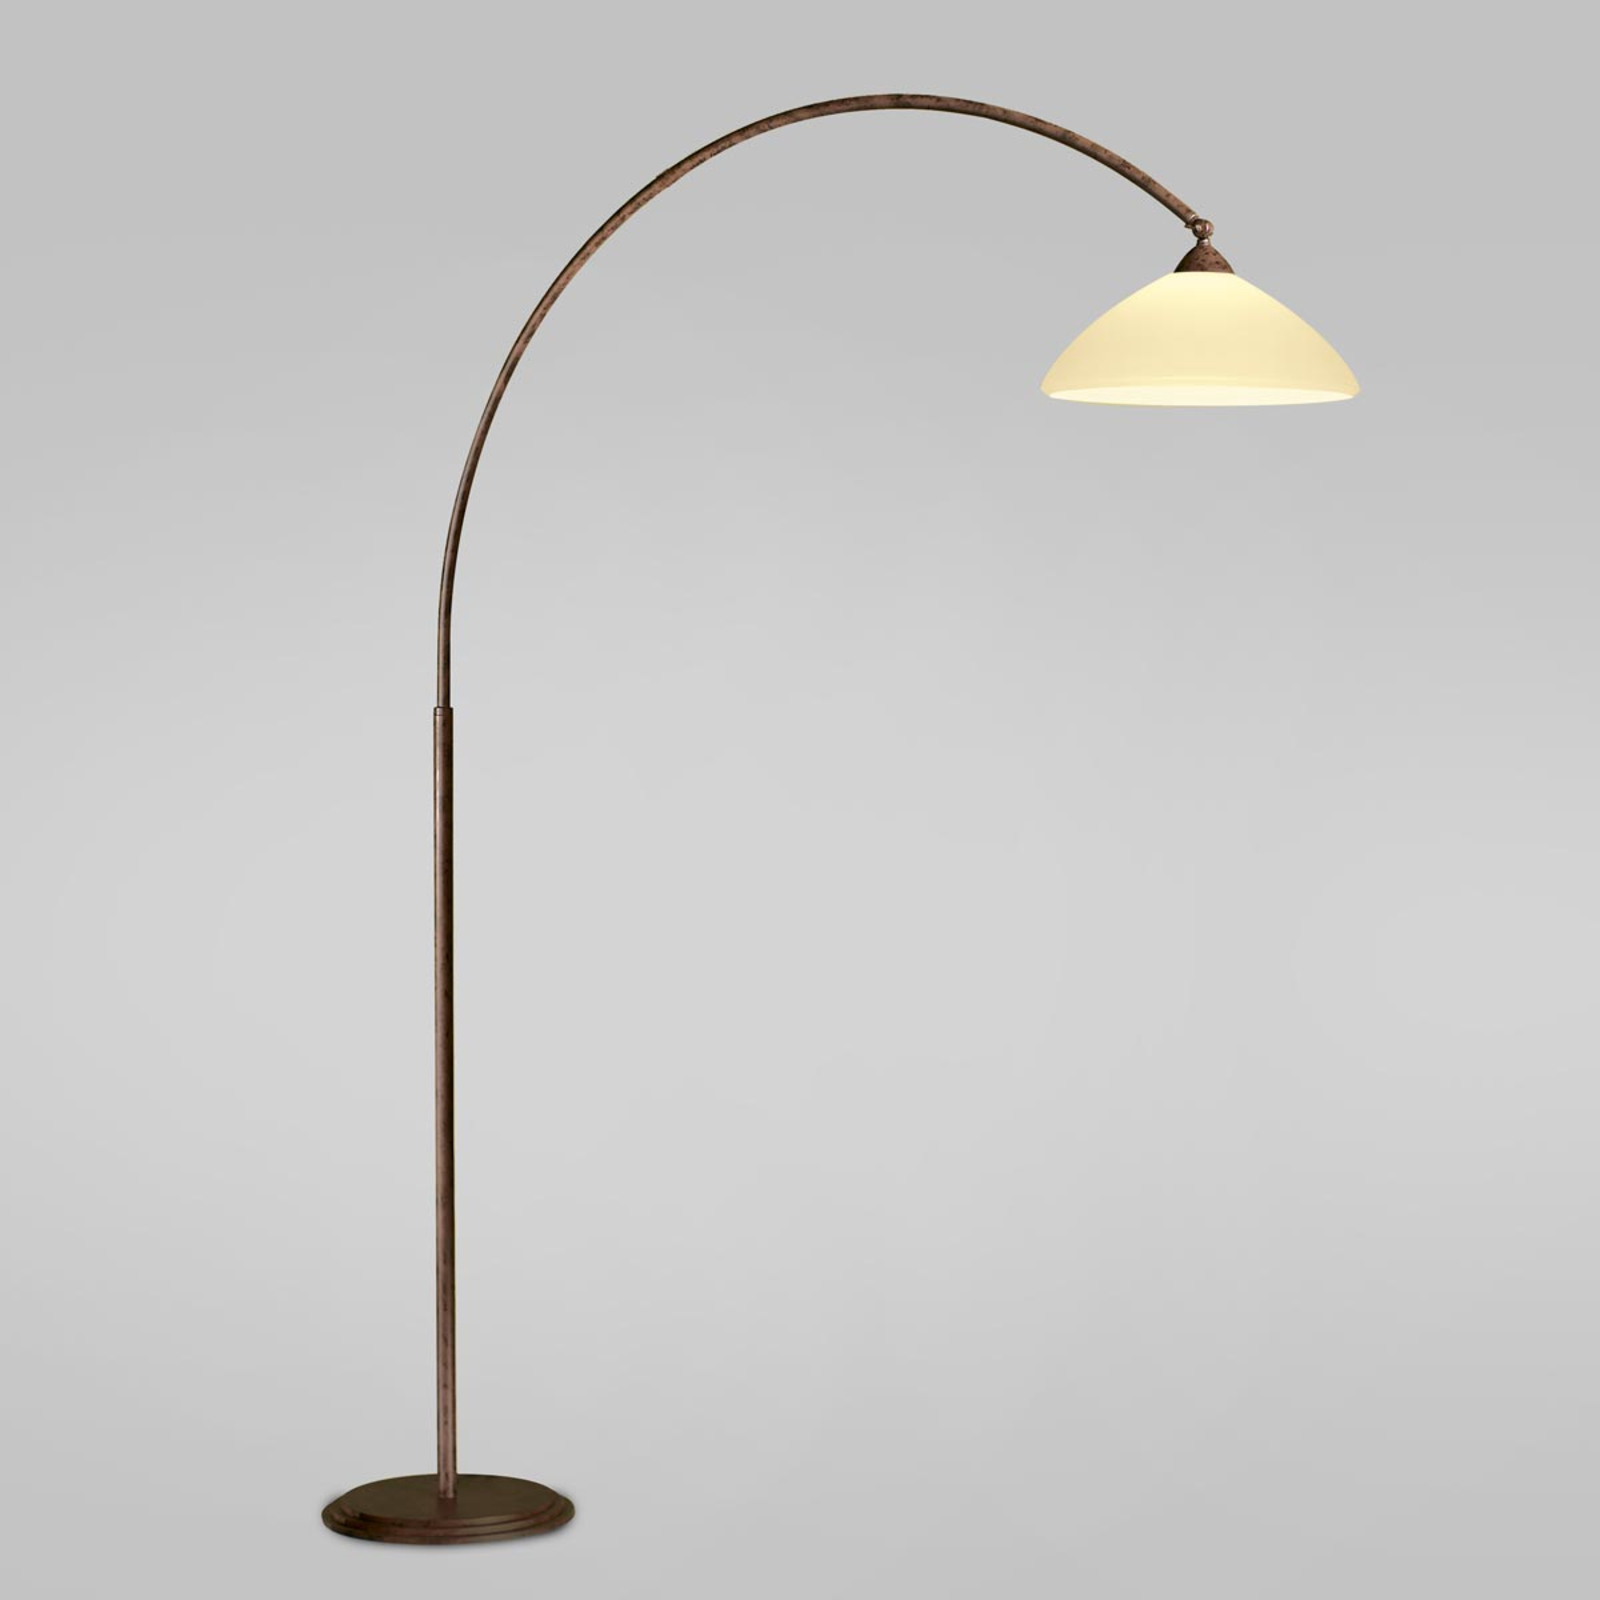 Oblúková lampa Samuele, presah 165 cm, krémová